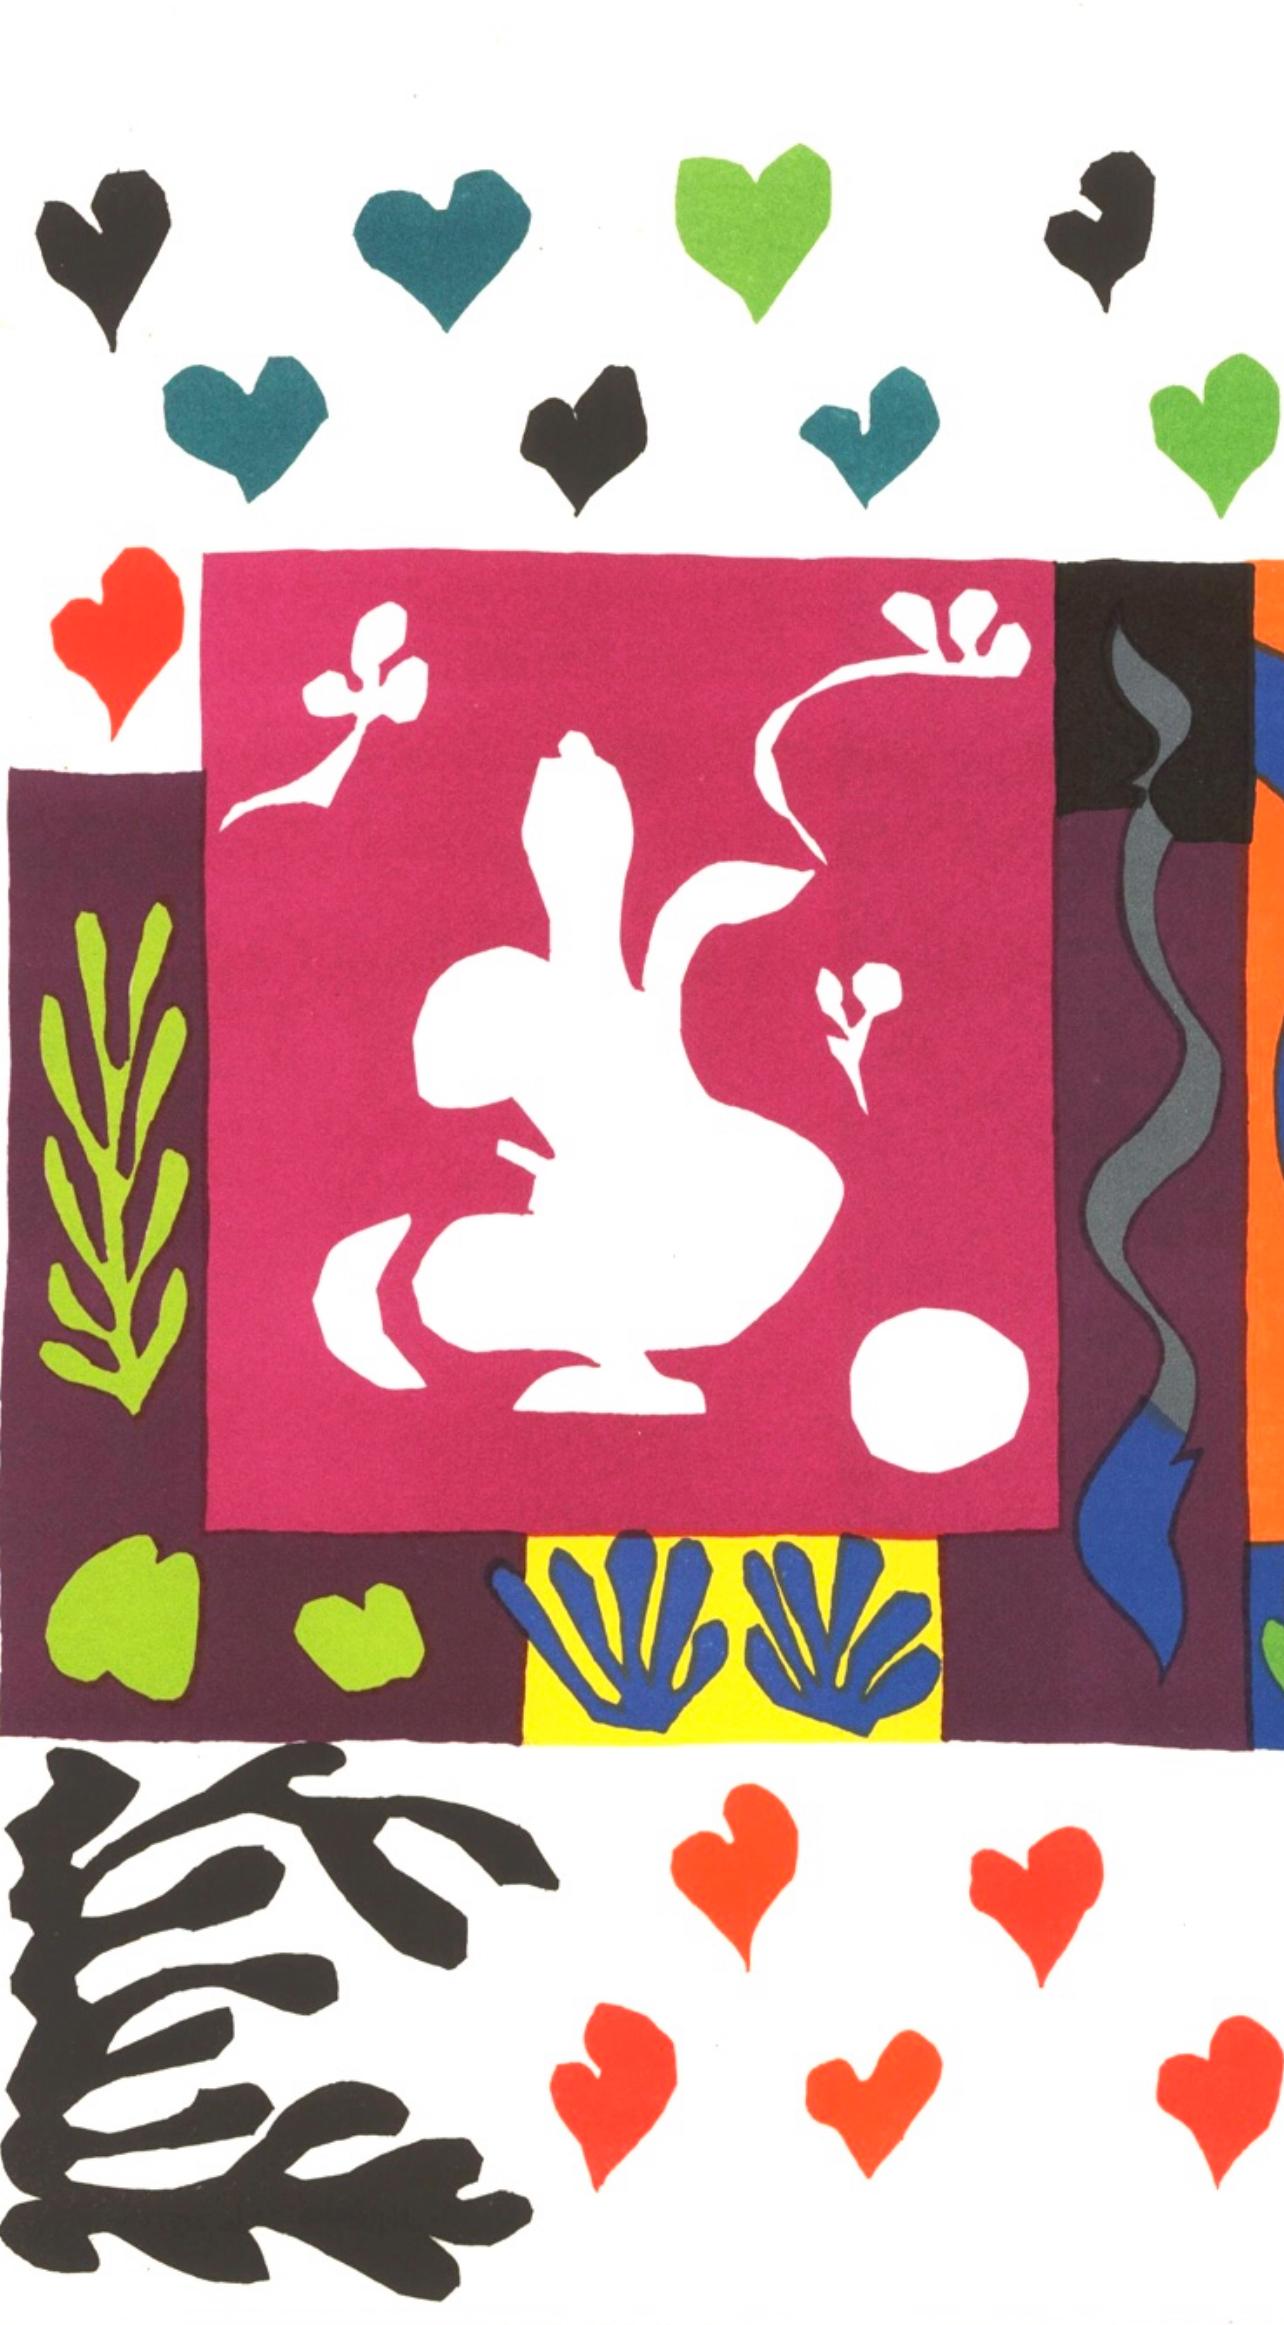 Matisse, Mille et une Nuits, Derrière le miroir (after) - Print by Henri Matisse